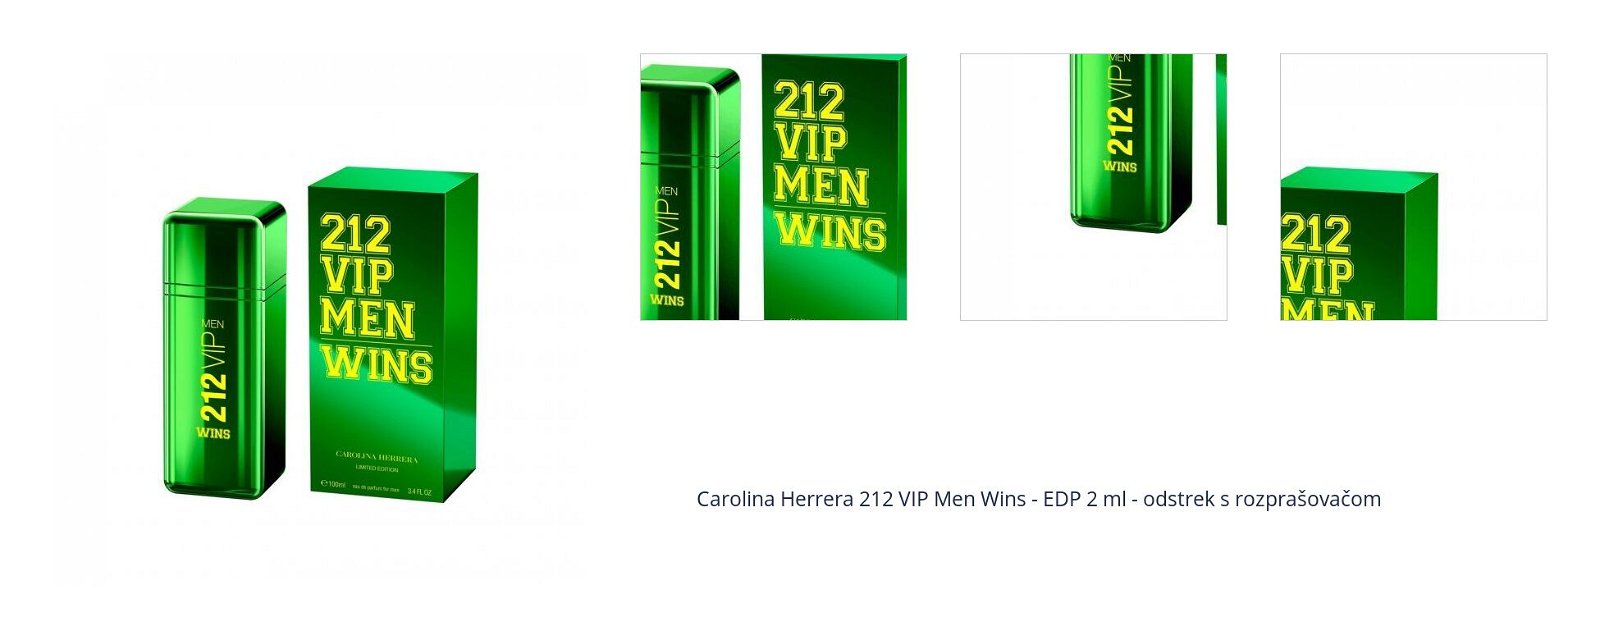 Carolina Herrera 212 VIP Men Wins - EDP 2 ml - odstrek s rozprašovačom 1